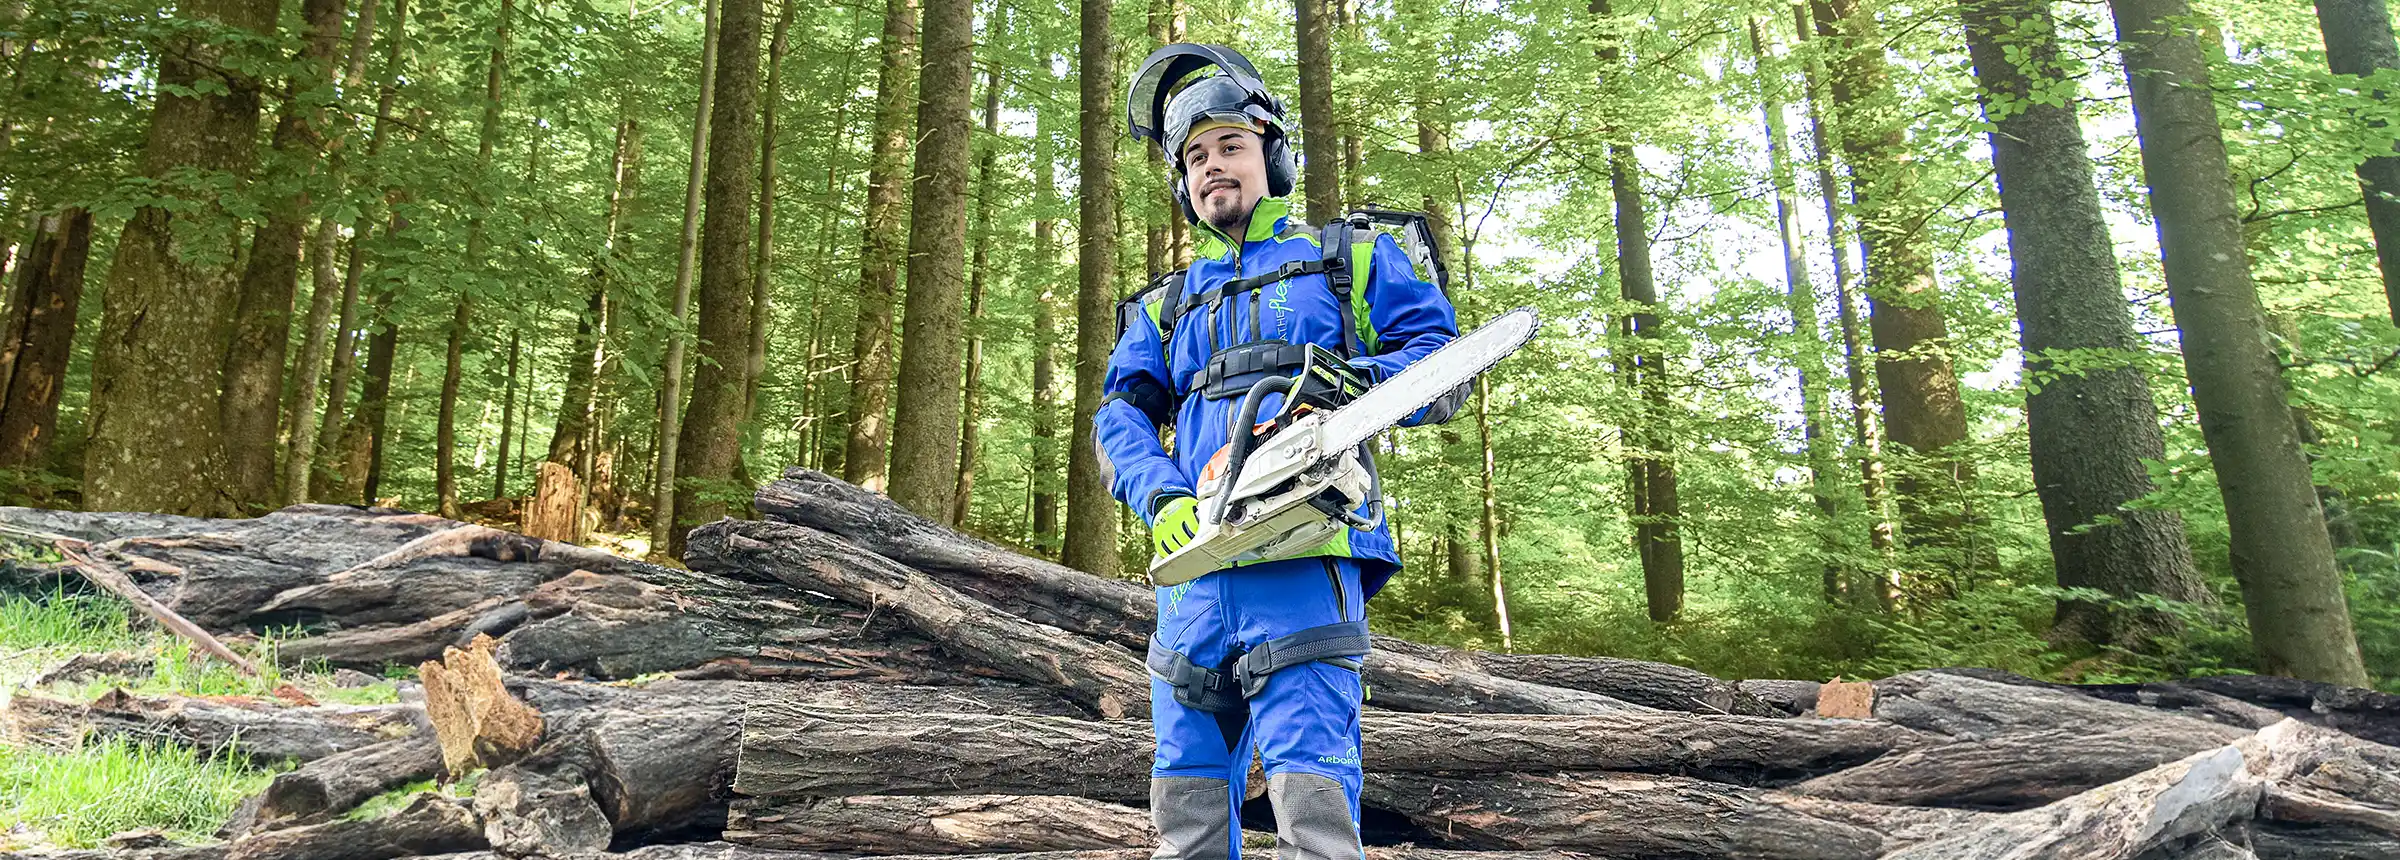 Mann mit blauer Forstwirtschaftskleidung und Exoskelett steht mit einer Motorsäge vor Bäumen im Wald